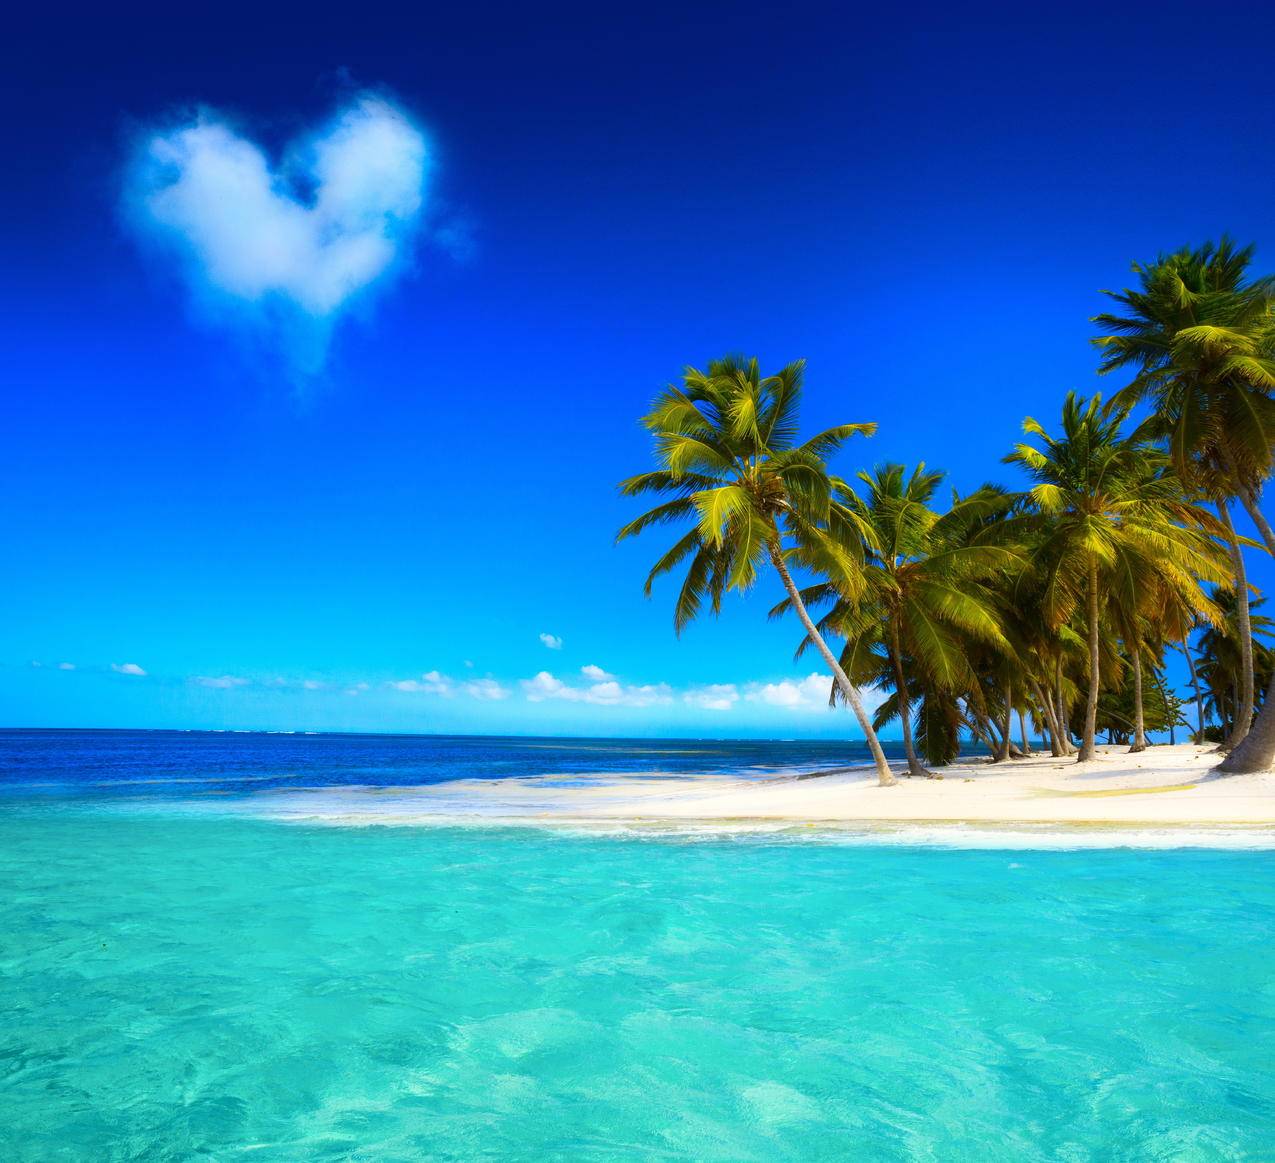 蓝天大海,沙滩,海岸,蓝色,翡翠,海洋,棕榈树,6K风景壁纸